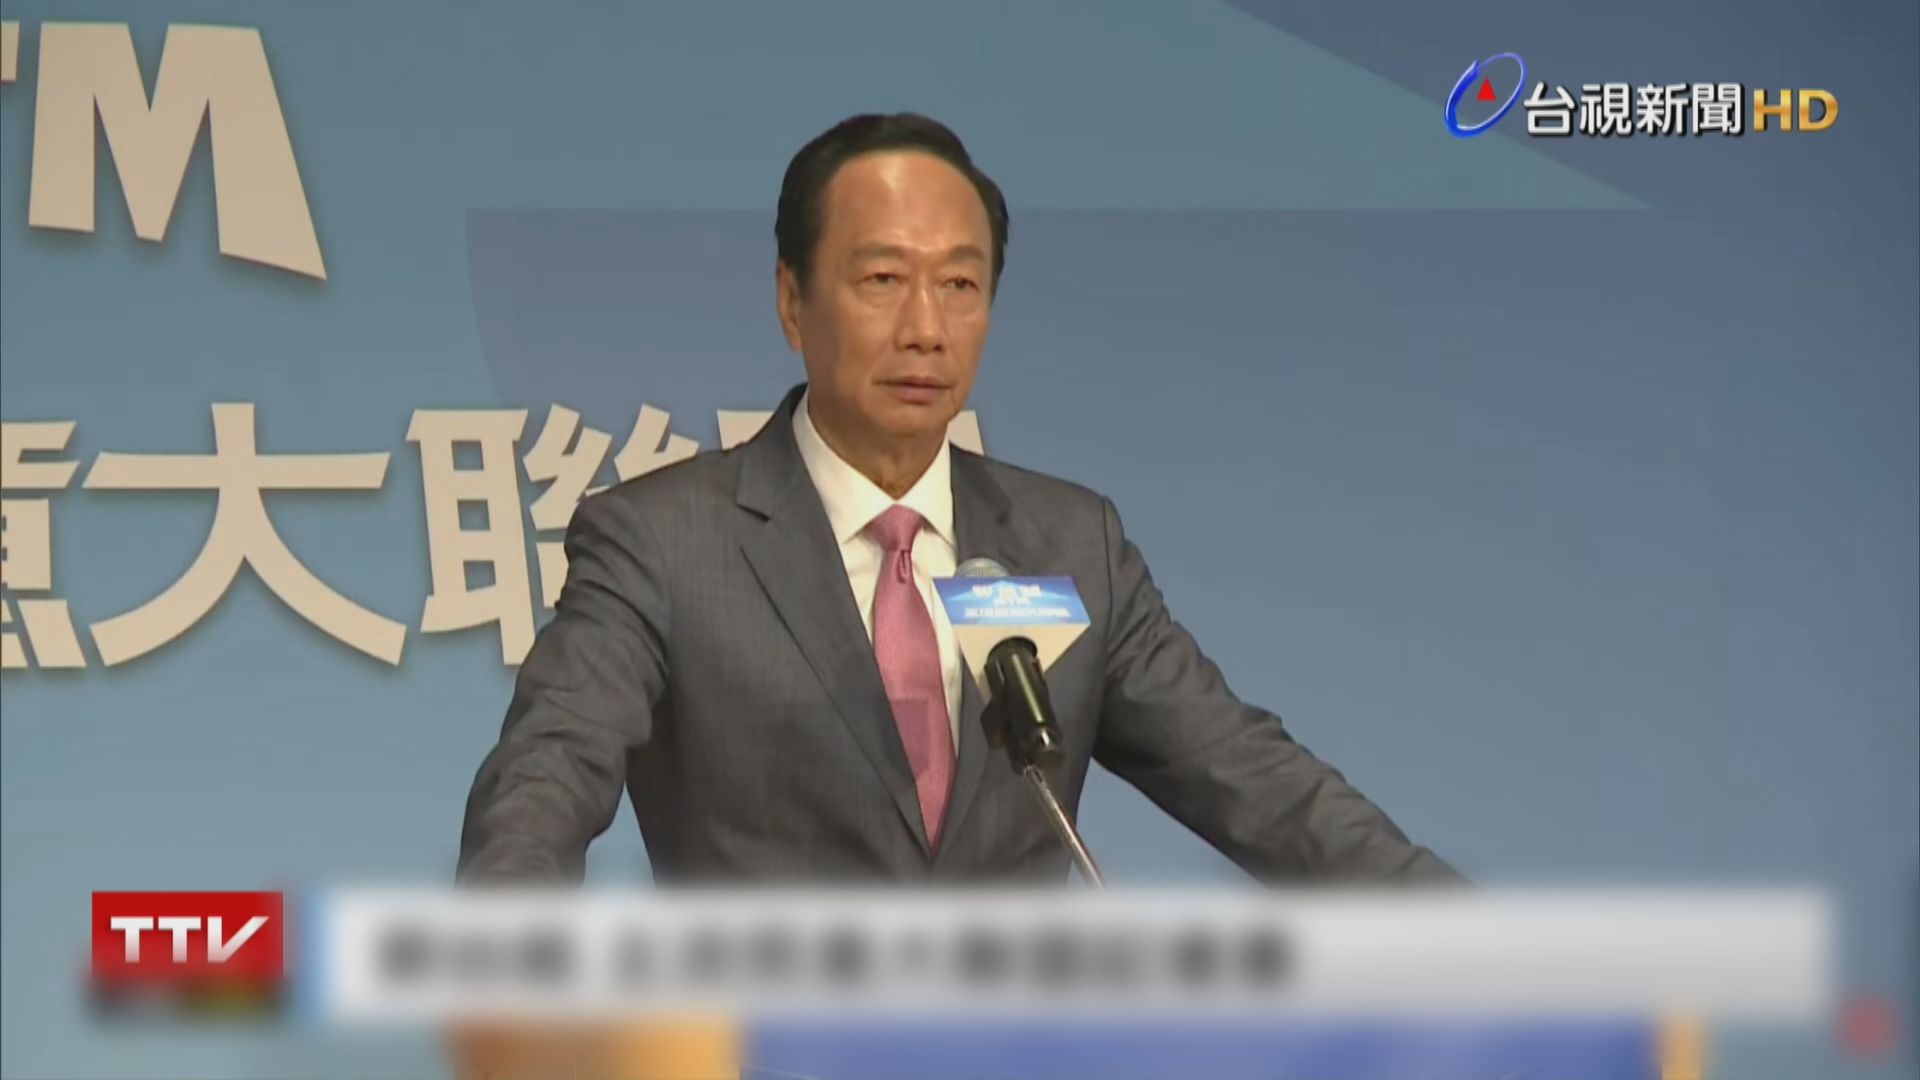 台灣鴻海集團創辦人郭台銘宣布參選總統